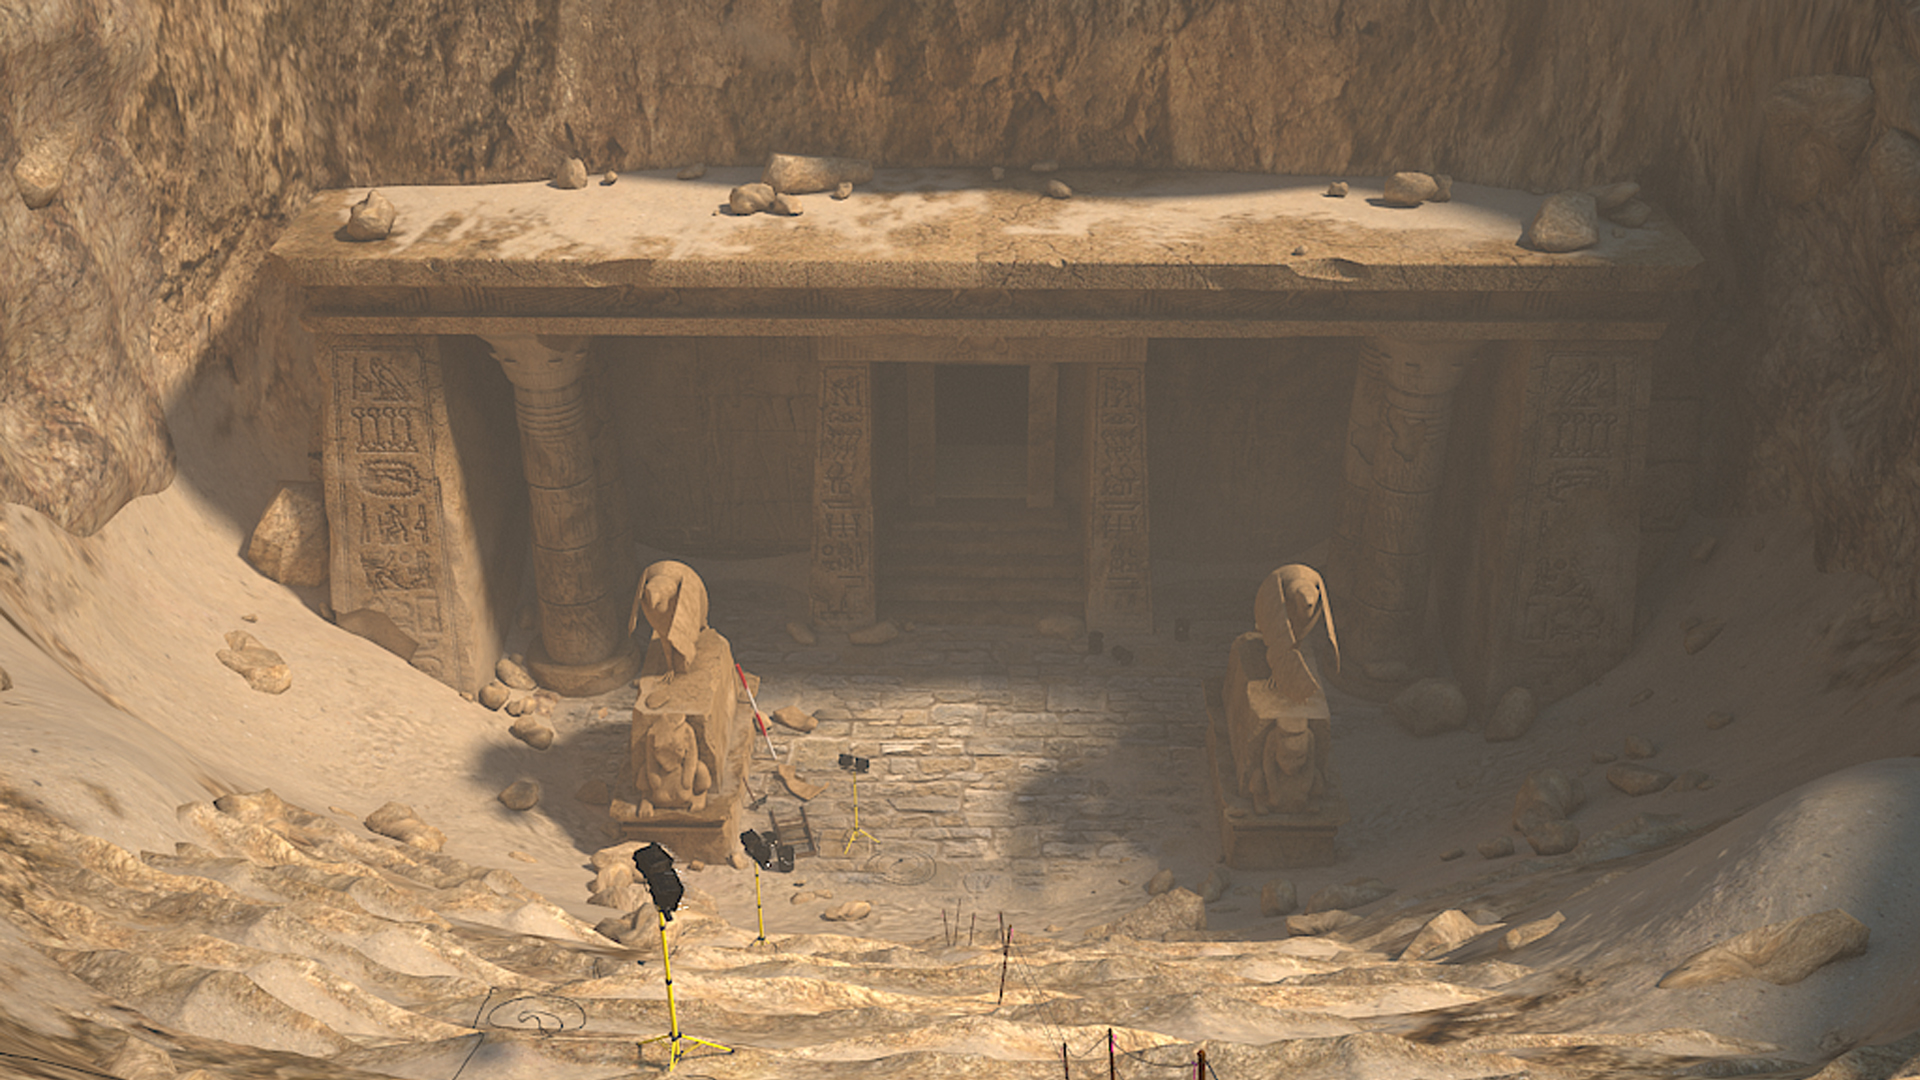 Nancy Drew: Tomb of the Lost Queen screenshot